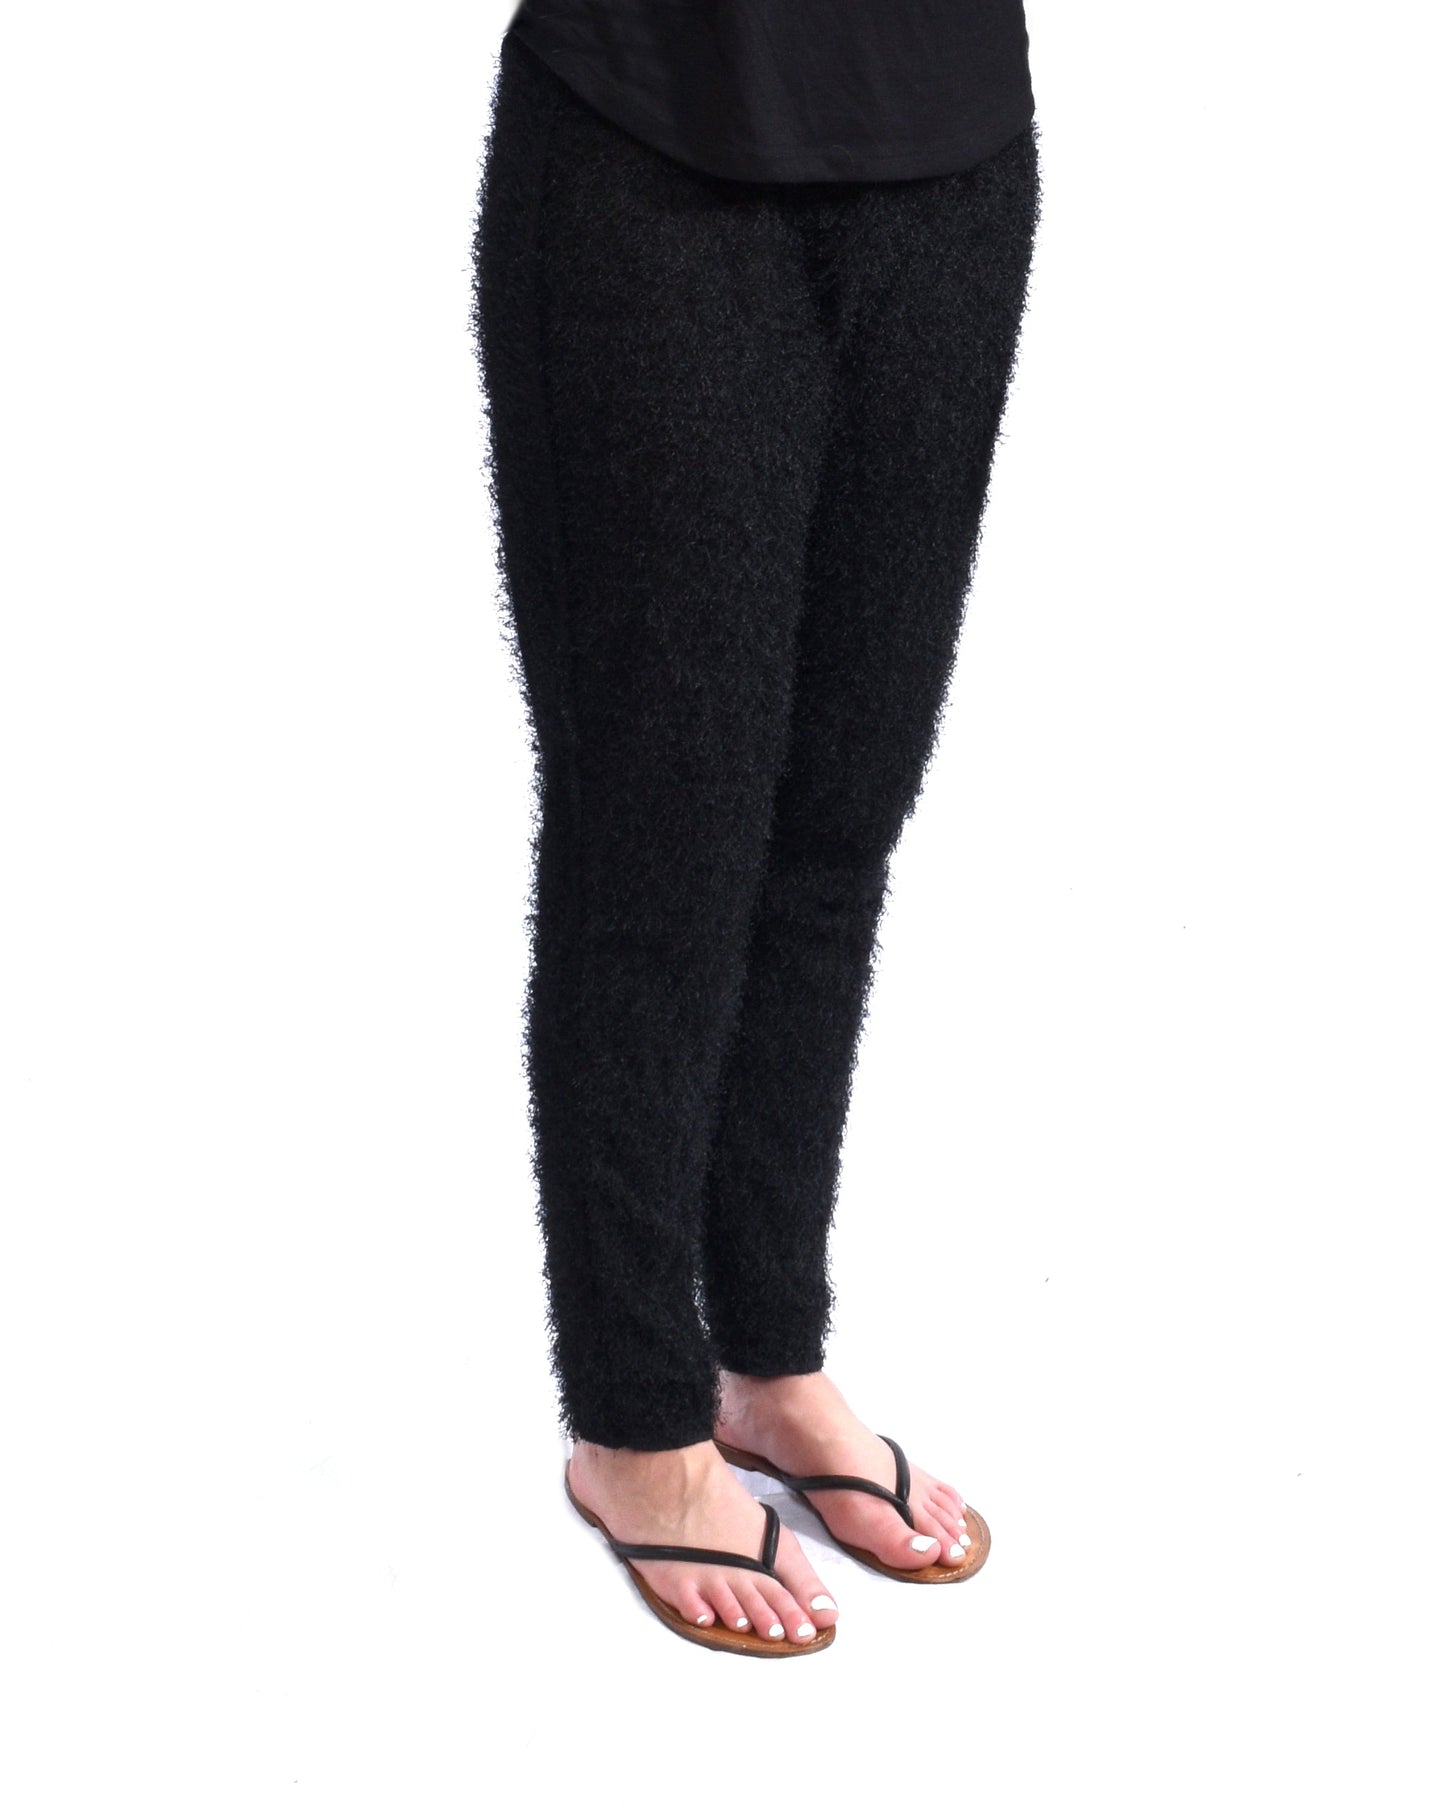 Furry Black Costume Leggings - L